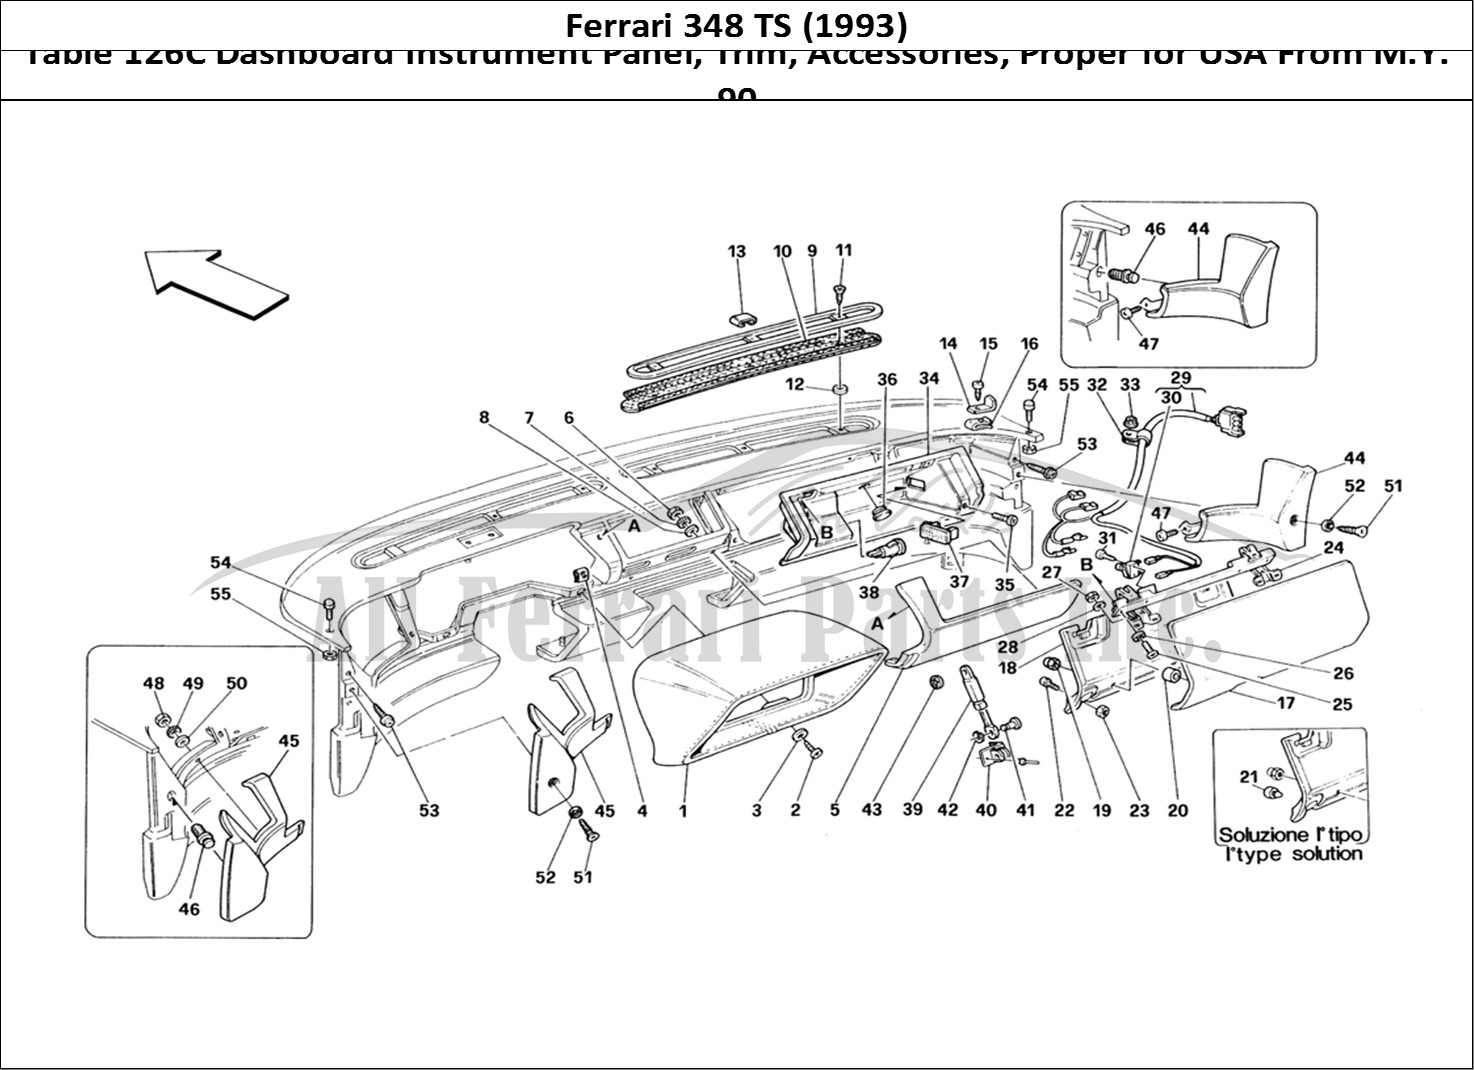 Ferrari Parts Ferrari 348 TB (1993) Page 126 Dashboard - Trim and Acce